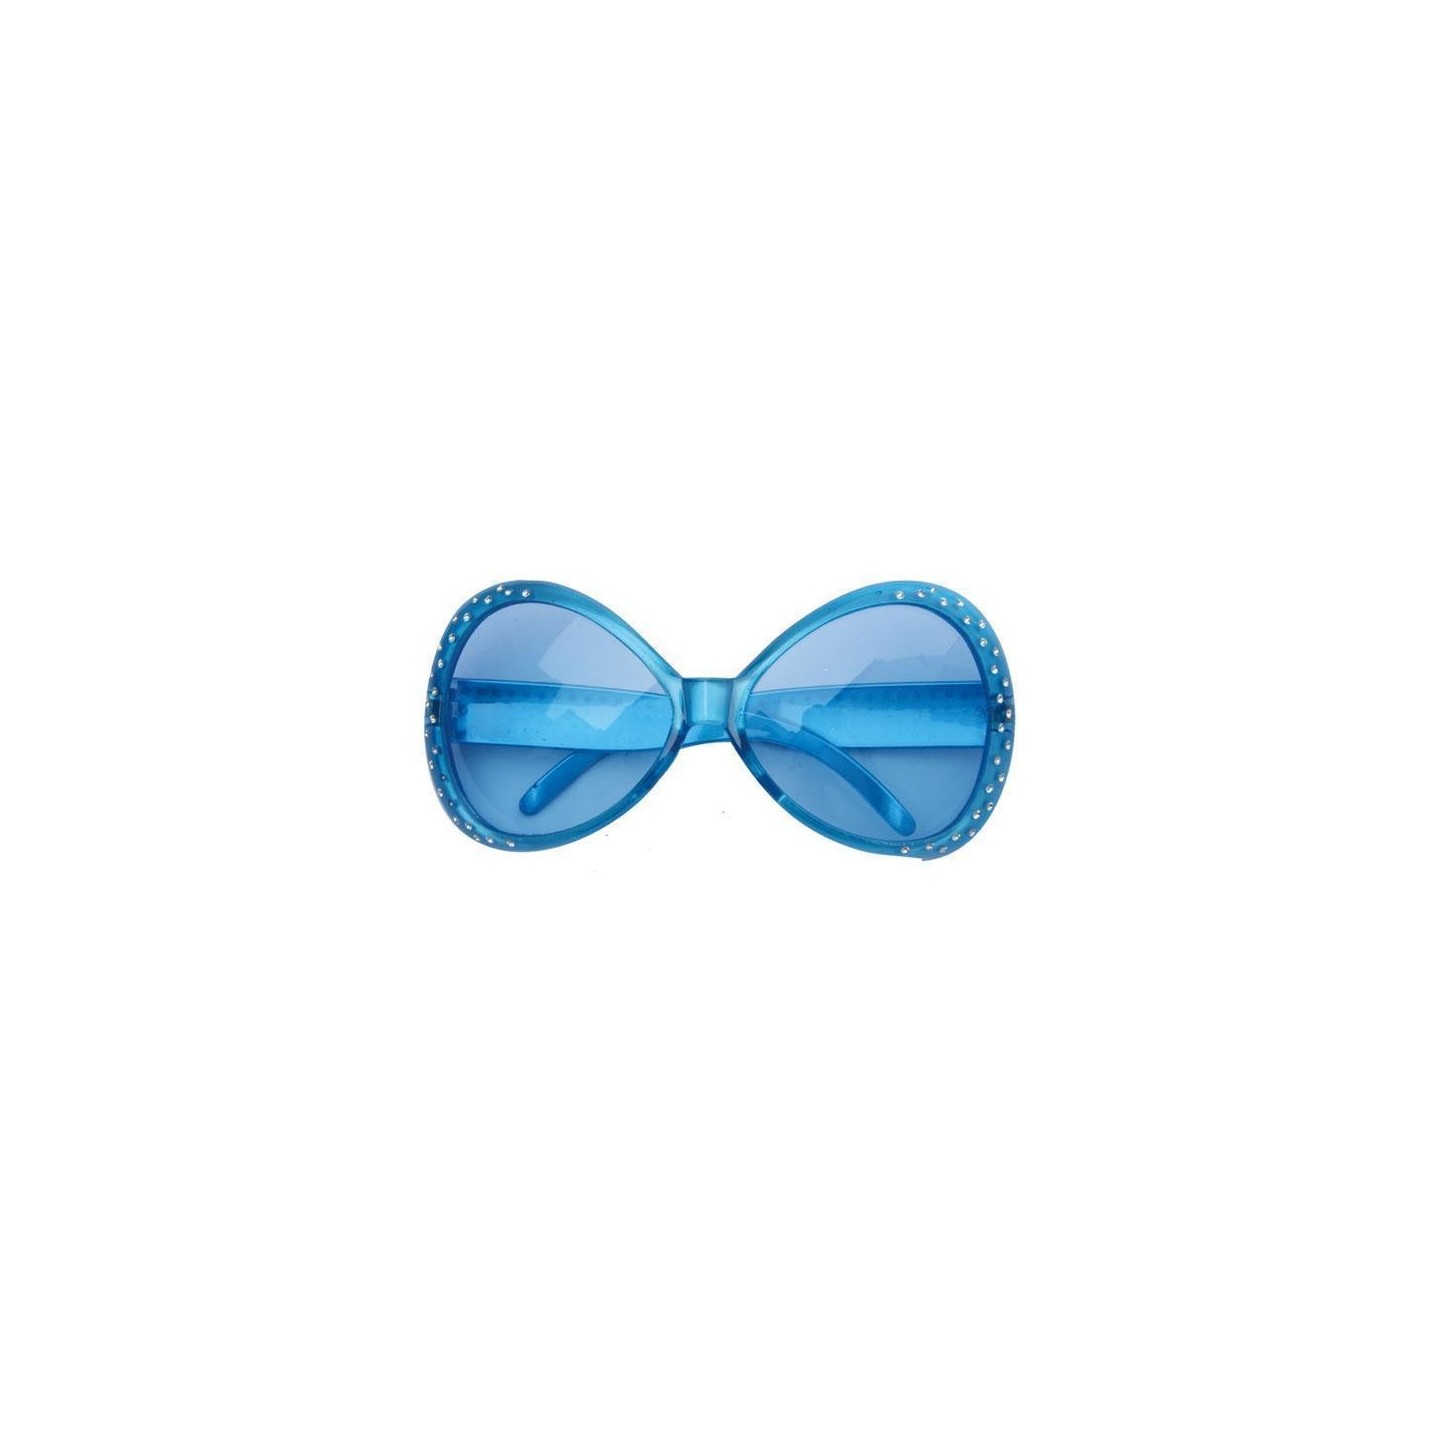 Feestbril blauwe bril carnaval partybril